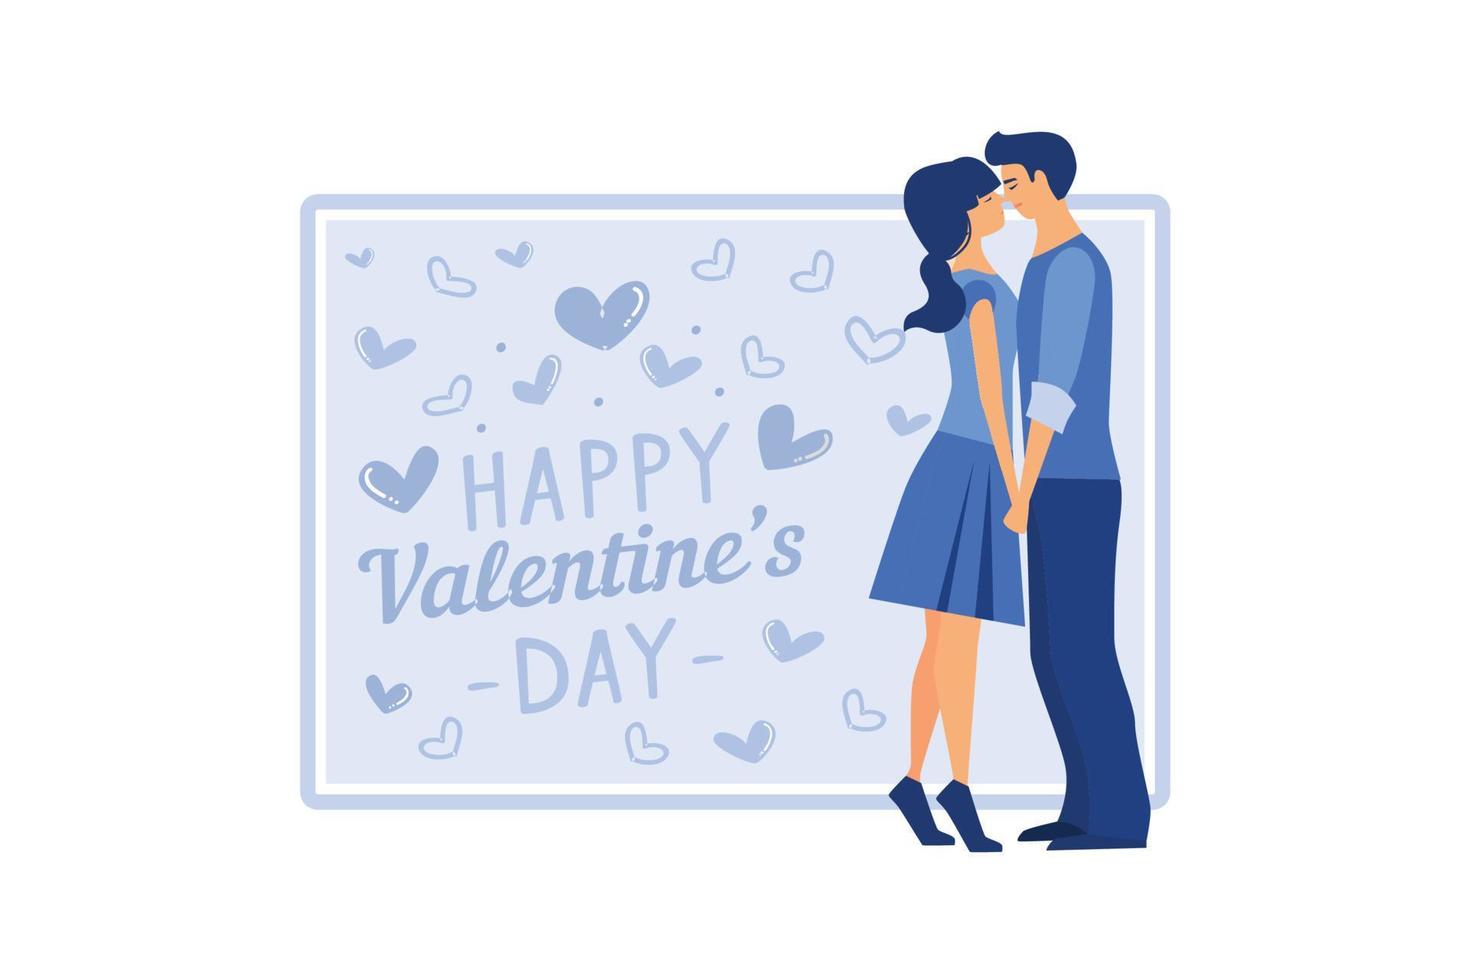 Casal apaixonado. feliz Dia dos namorados. 14 de fevereiro é o dia de todos os amantes. gráficos adequados para decorar cartazes, folhetos, cartões postais, folhetos ilustração vetorial plana vetor